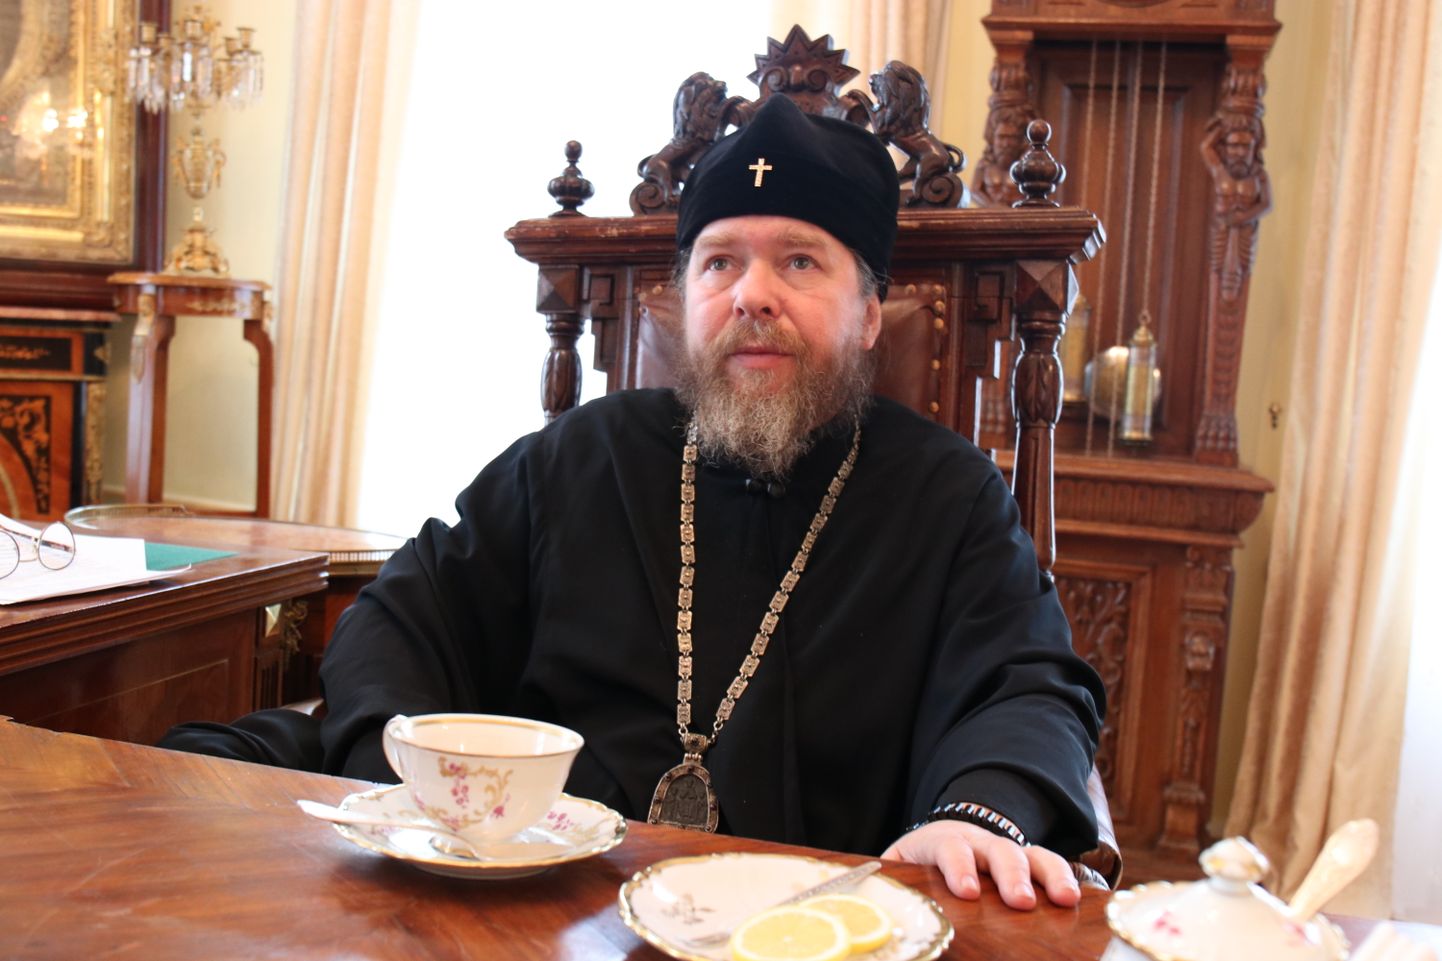 Настоятель Печерского монастыря отец Тихон угостил журналиста Postimees Яануса Пийрсалу пряниками и чаем.